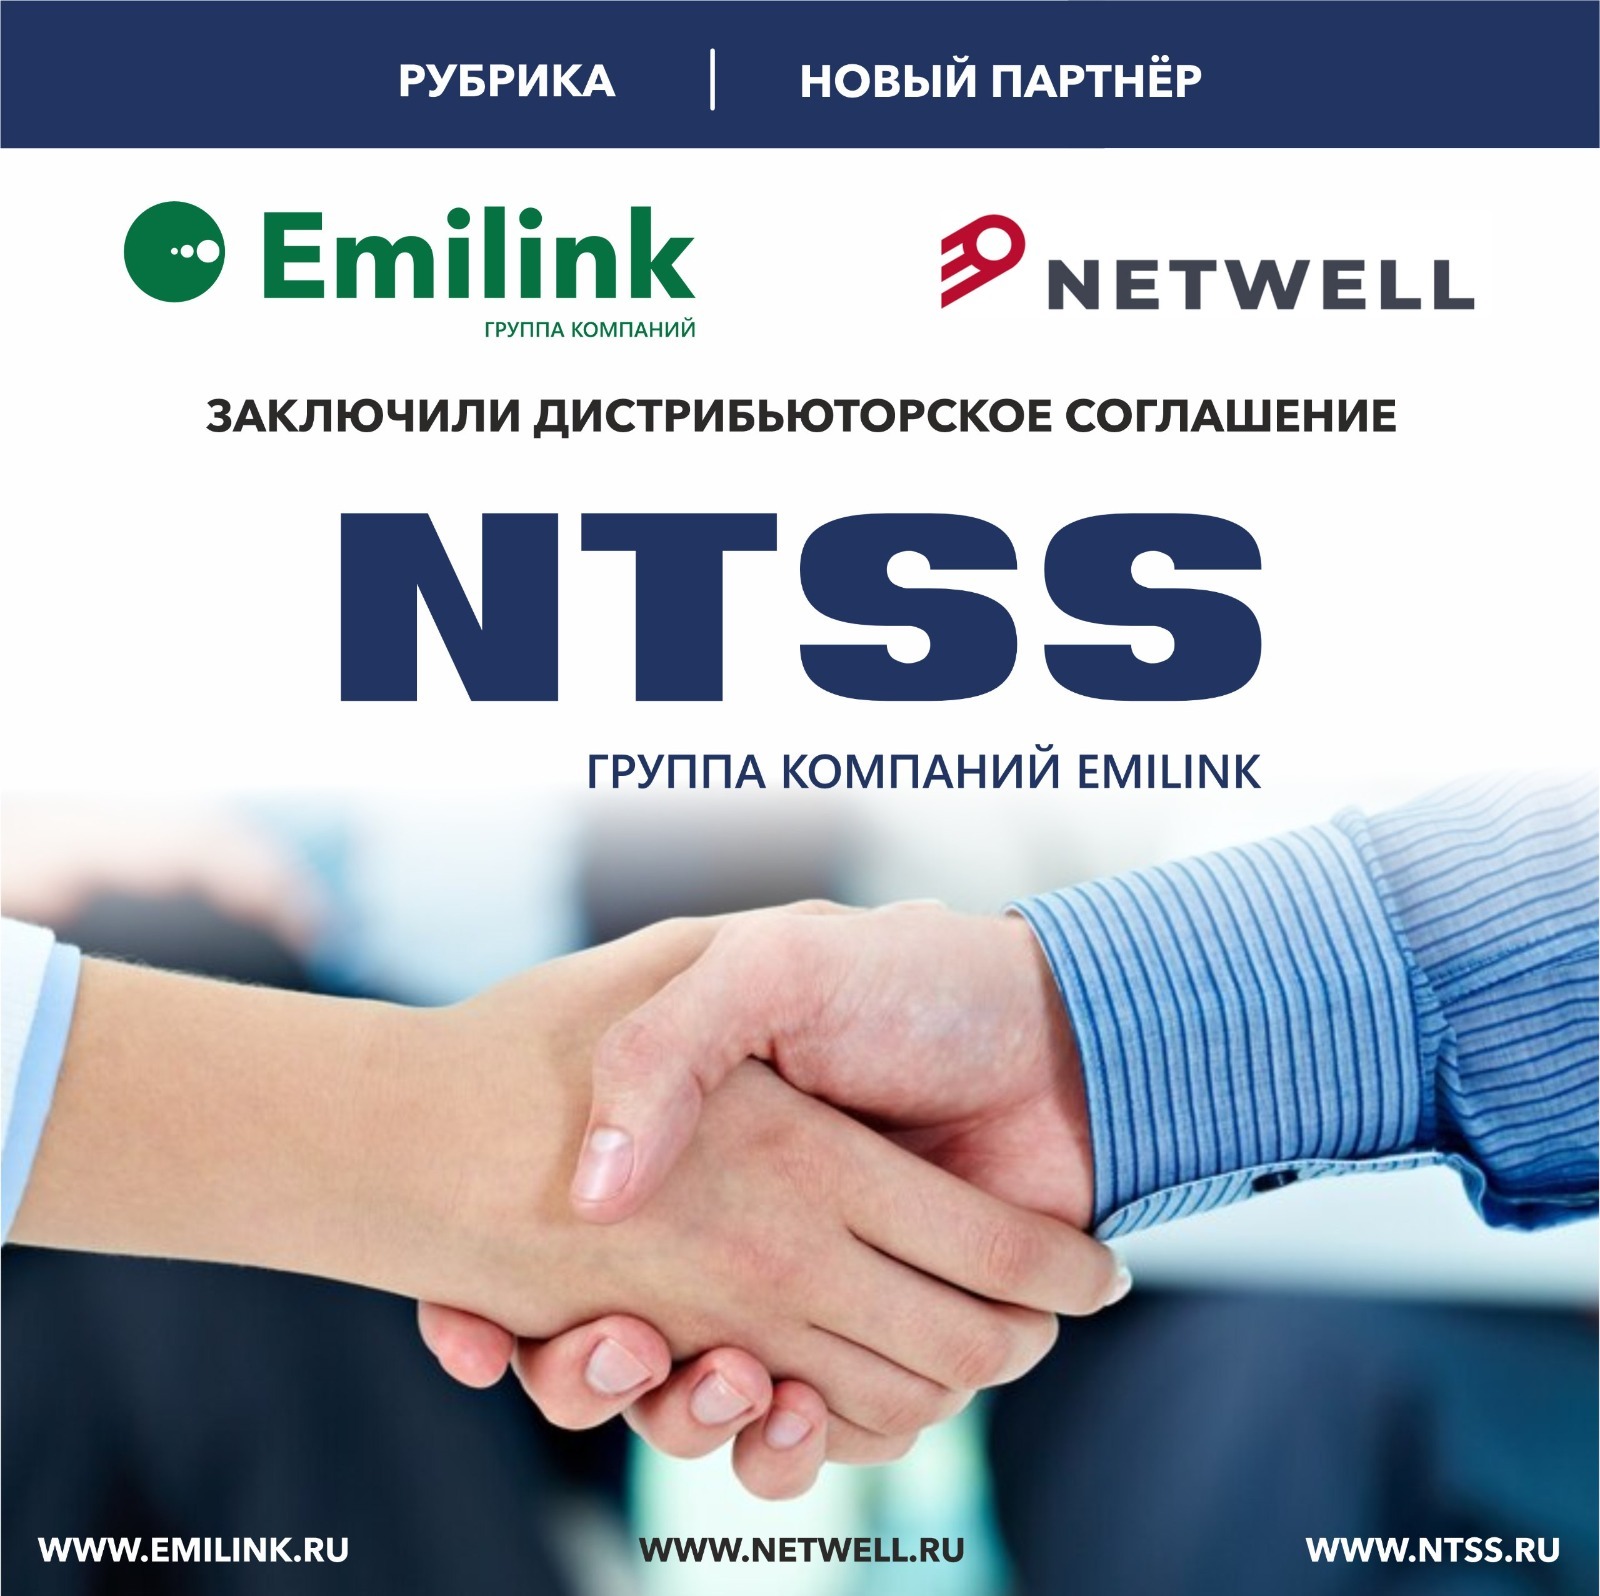 EMILINK и Netwell заключили дистрибьюторское соглашение